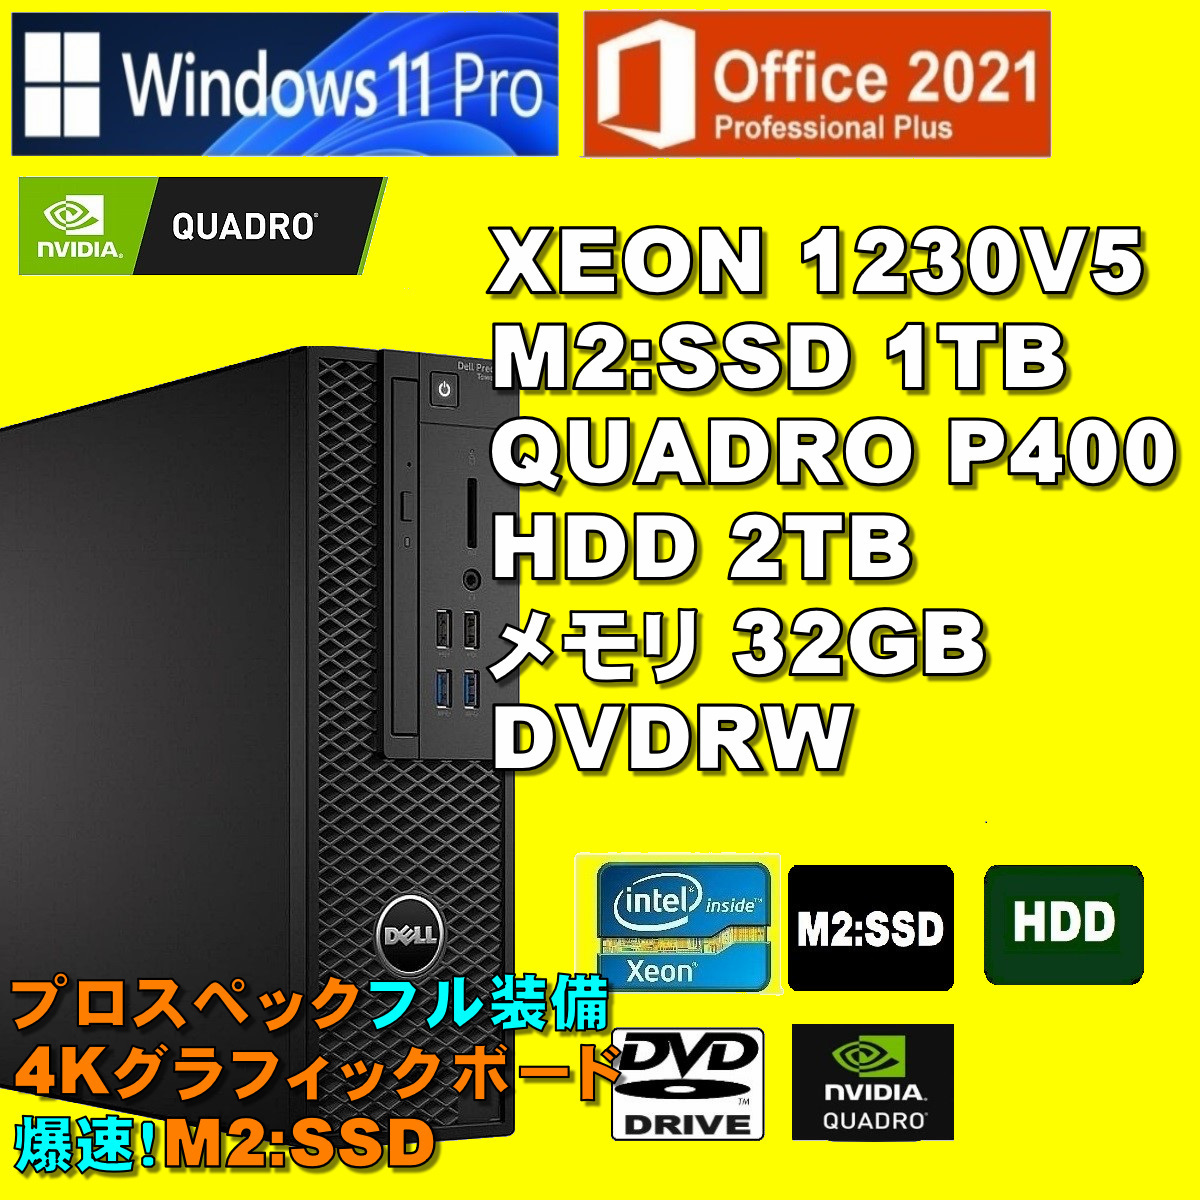 プロスペック!4Kx3画面 XEON-1230V5/ QUADRO P-400/ 新品M2:SSD-1TB/ HDD-2TB/ メモリ-32GB/ DVDRW/ Win11Pro/ Office2021Pro/ メディア15の画像1